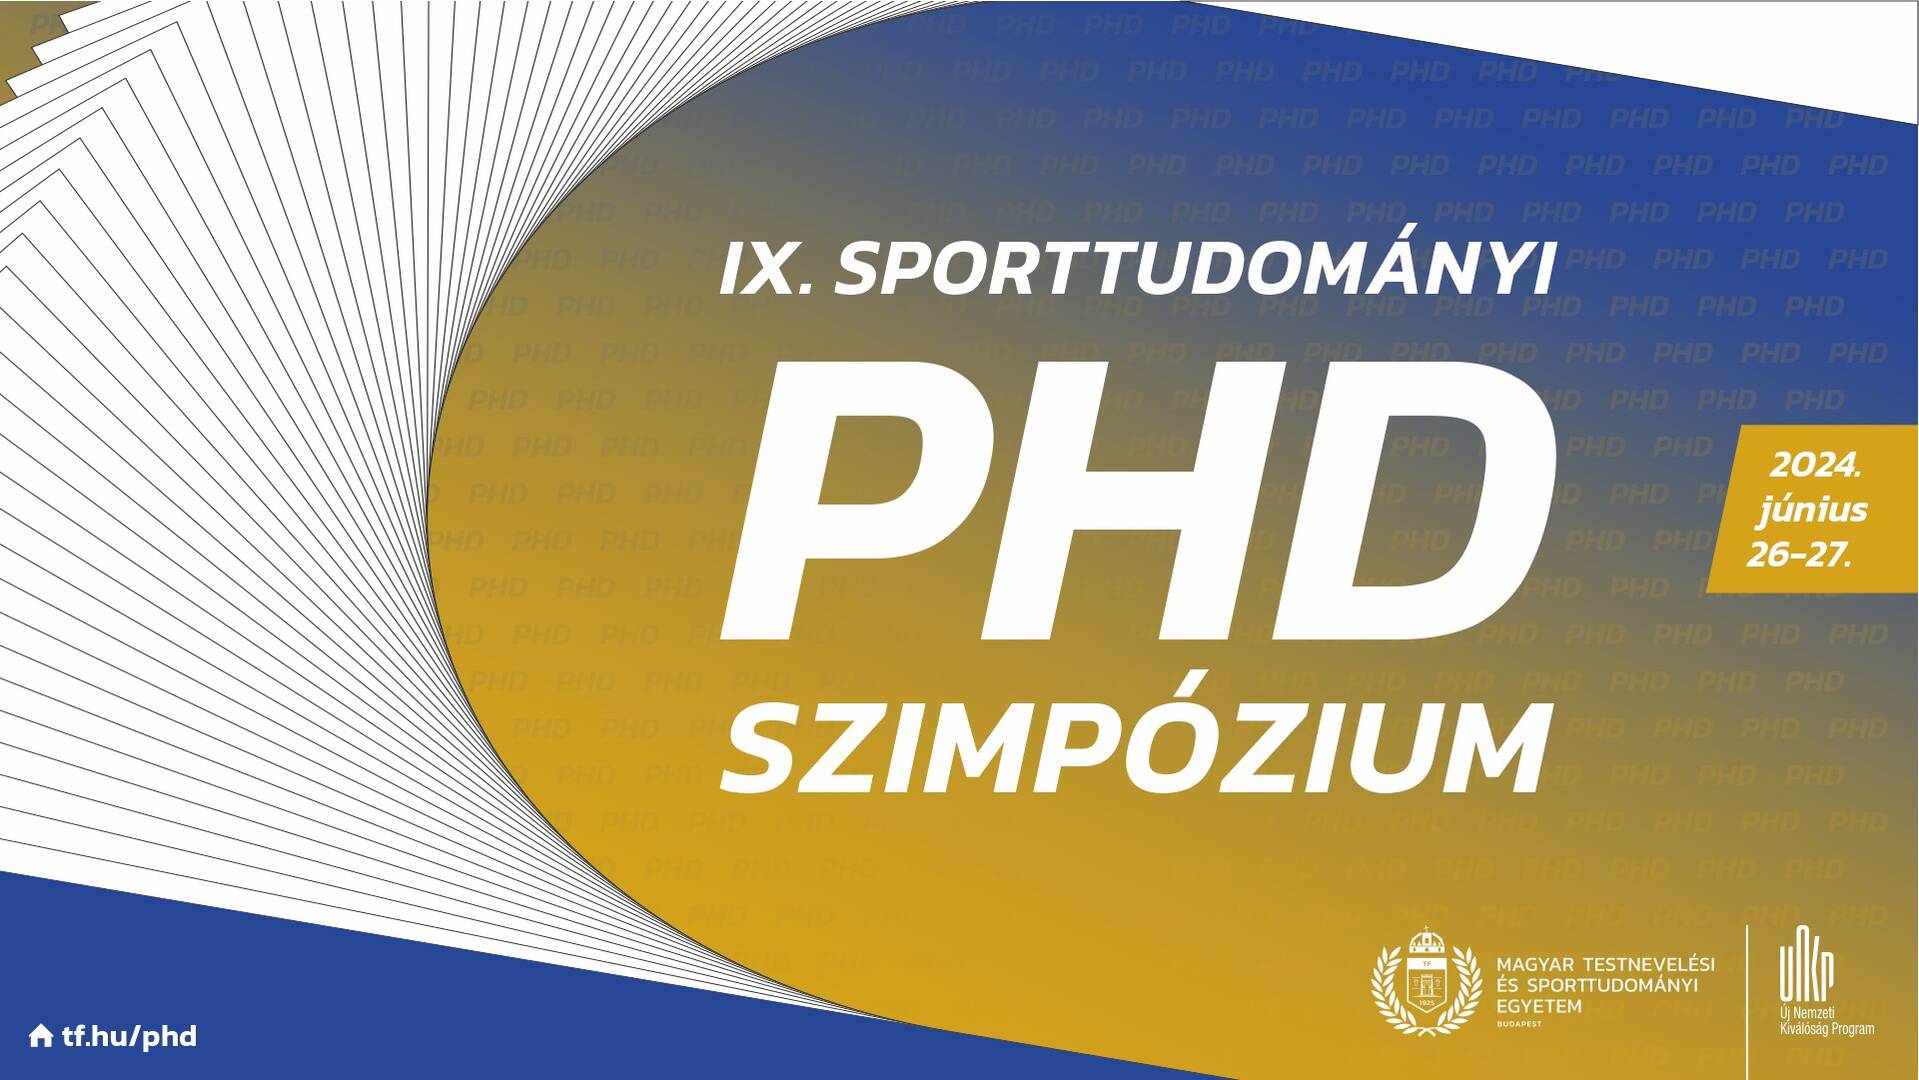 Meghívó a IX. Sporttudományi PhD Szimpóziumra